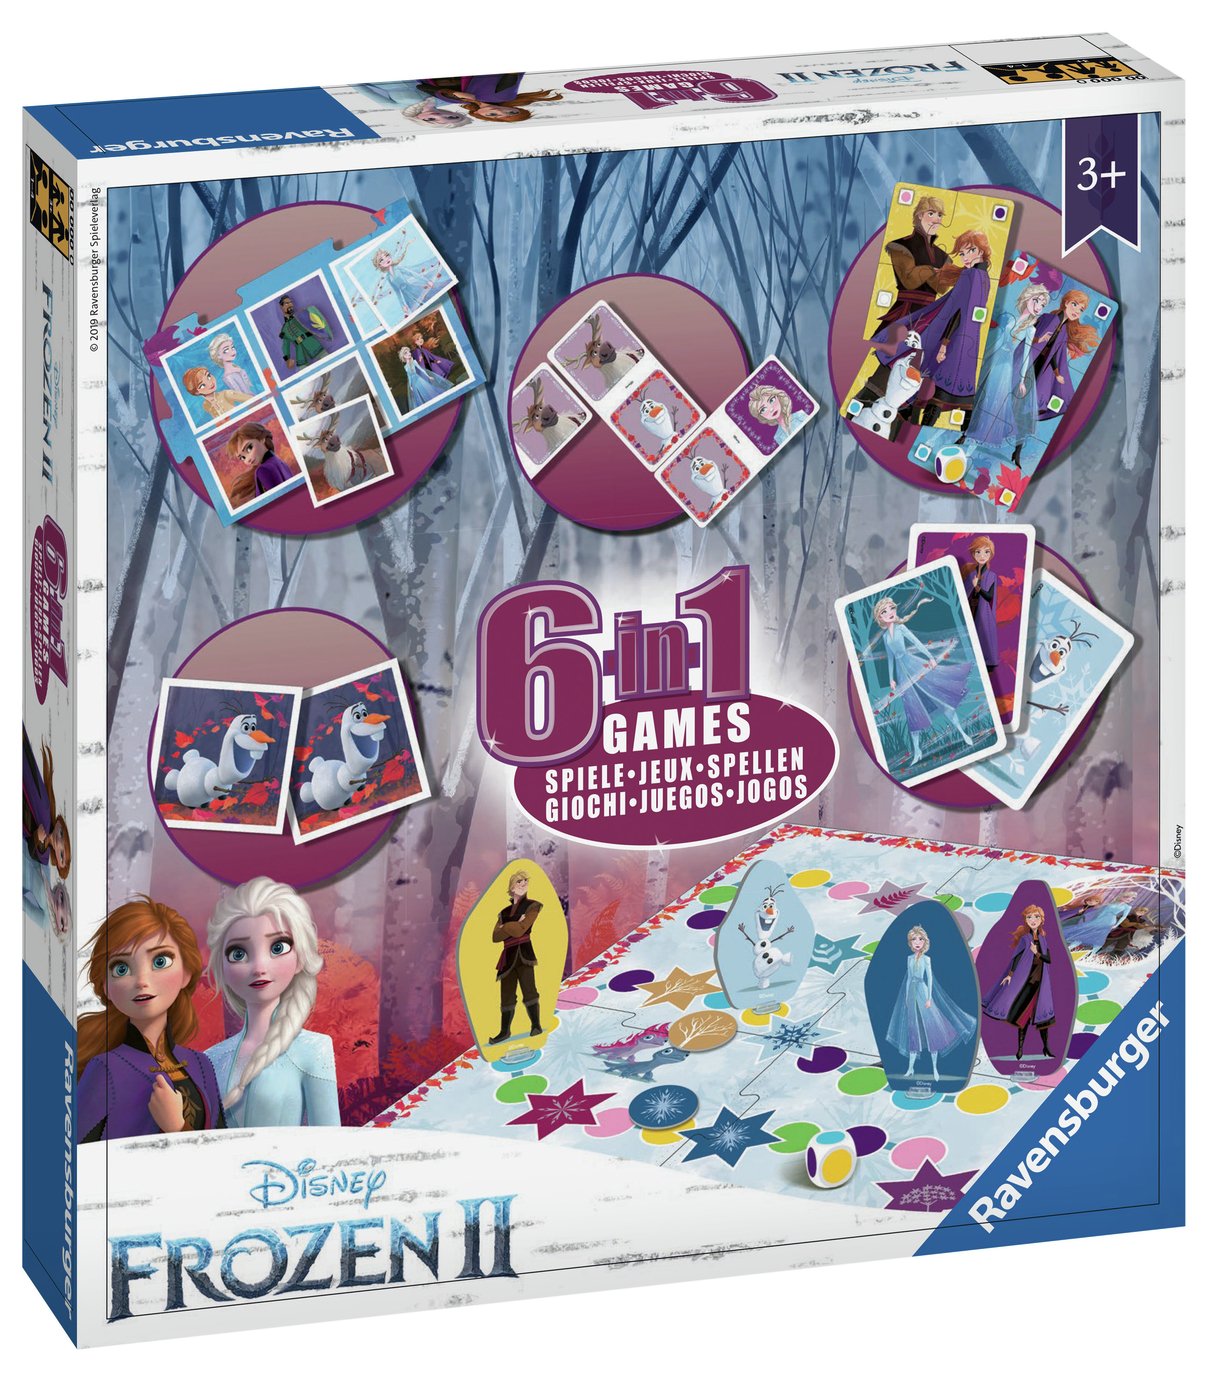 Disney Frozen 6-in-1 Games Review